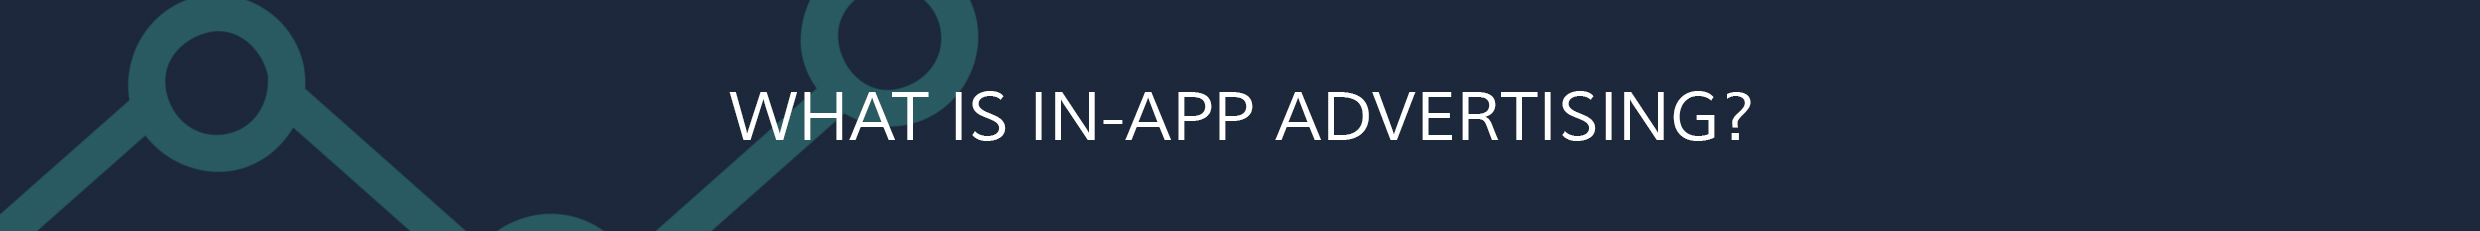 in-app advertising